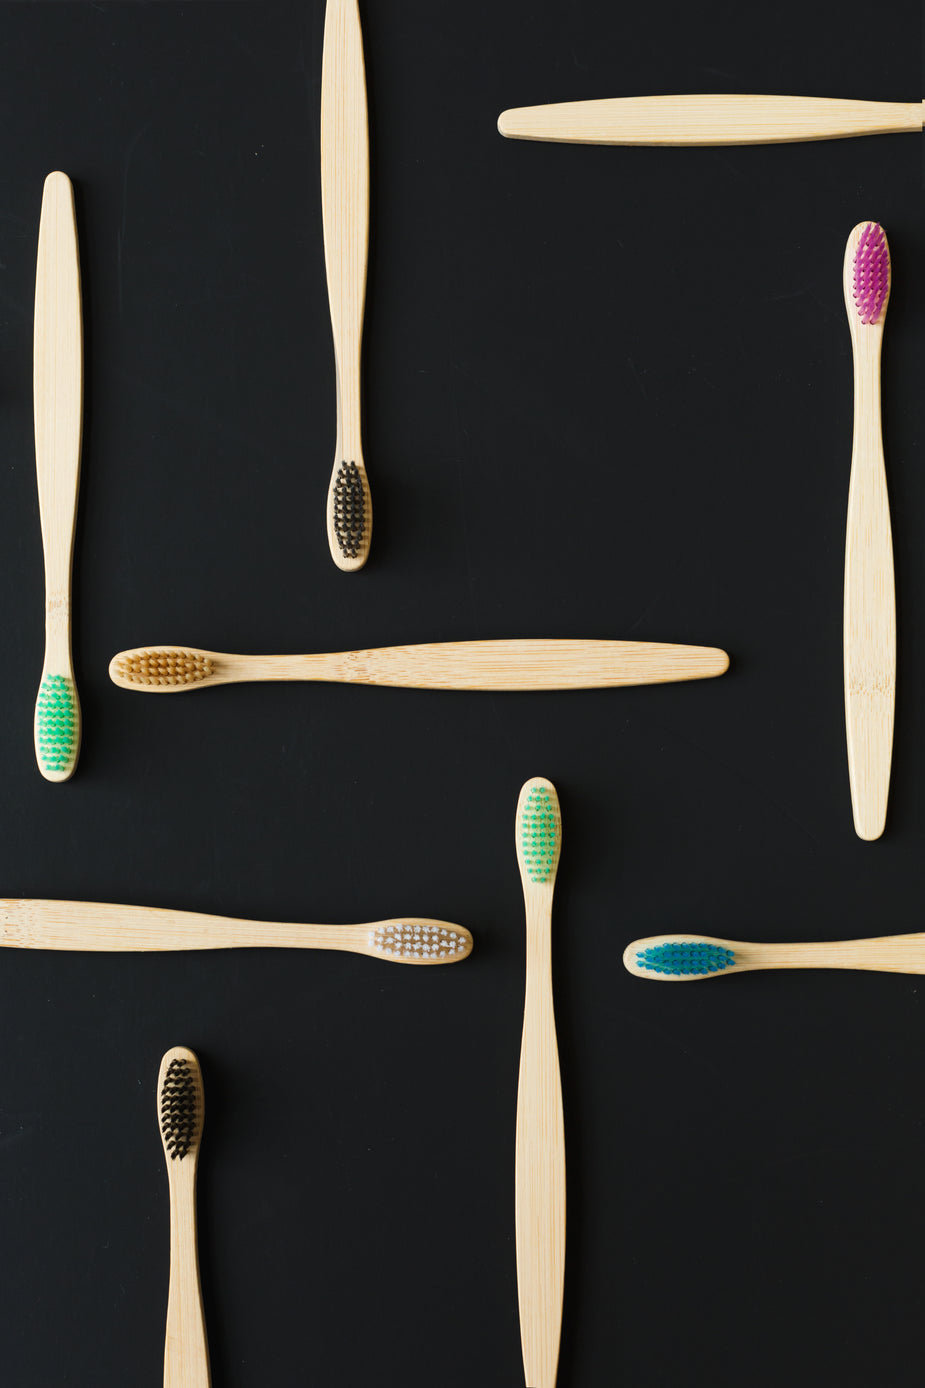 Free Bamboo Brushes On Black Image: Stunning Photography